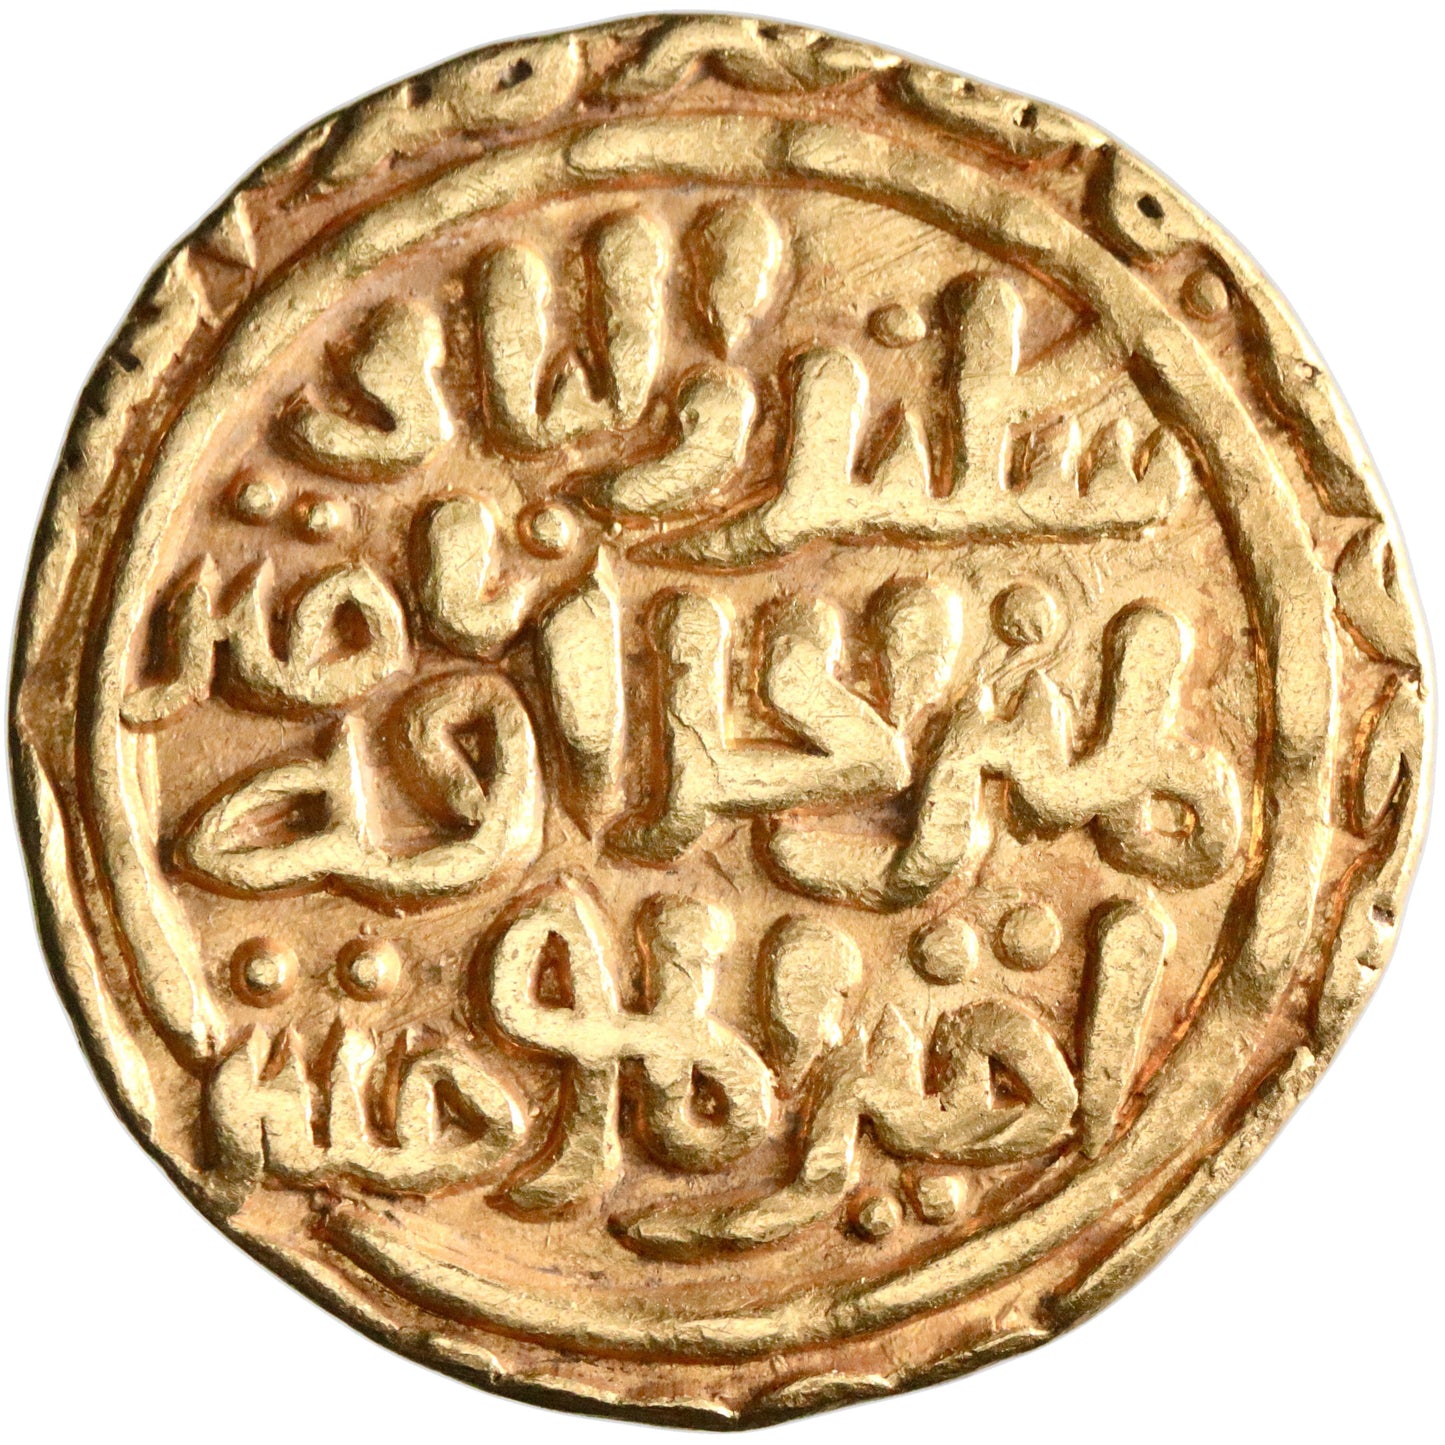 Delhi, 'Ala al-Din Muhammad, gold tanka, Hadrat Dehli (Delhi) mint, AH 707, "the second Alexander"